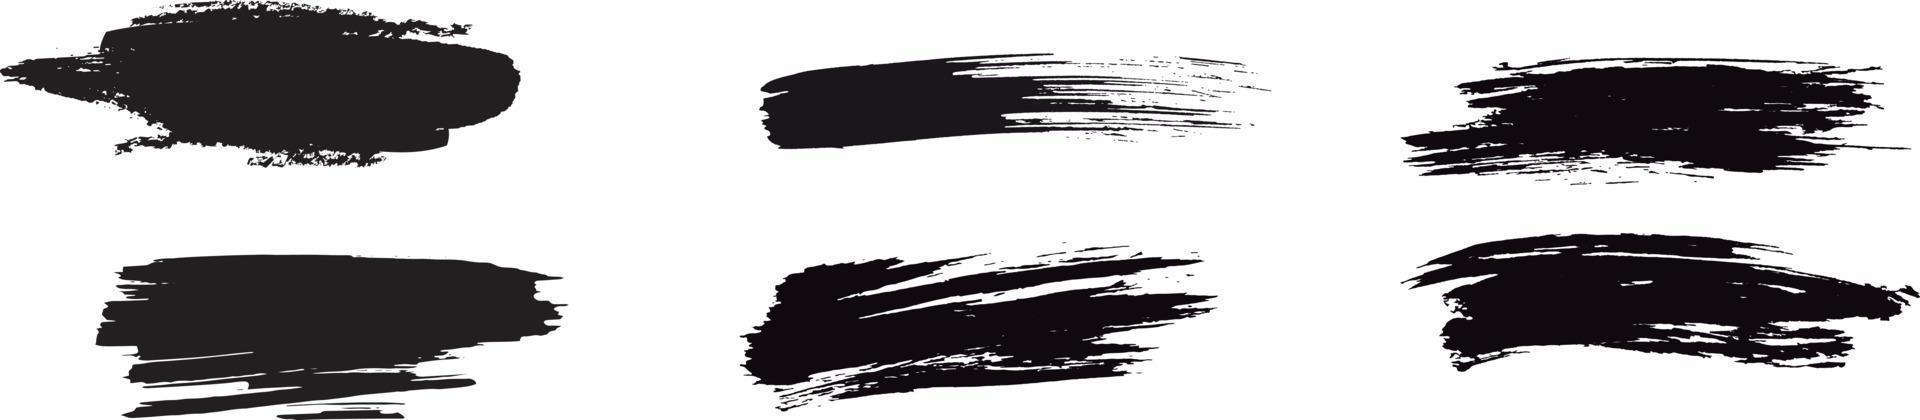 samling av grunge svart färg, bläck penseldrag. penslar, linjer, pensel, drag, grunge, smutsig, bakgrund. grunge bakgrunder set vektor